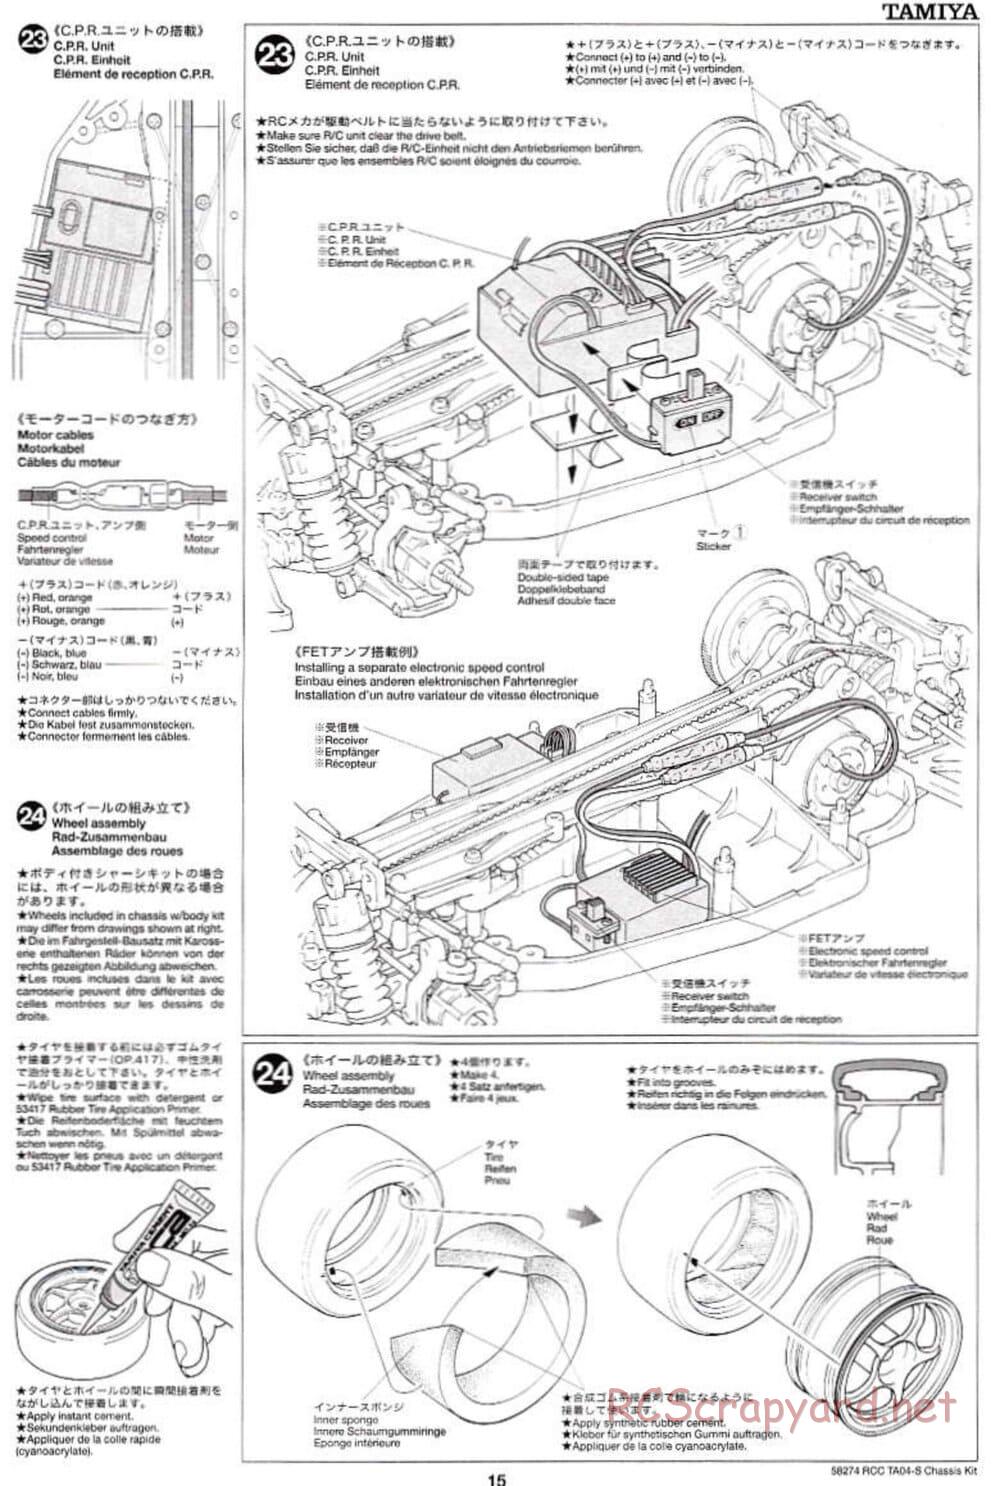 Tamiya - TA-04S Chassis - Manual - Page 15